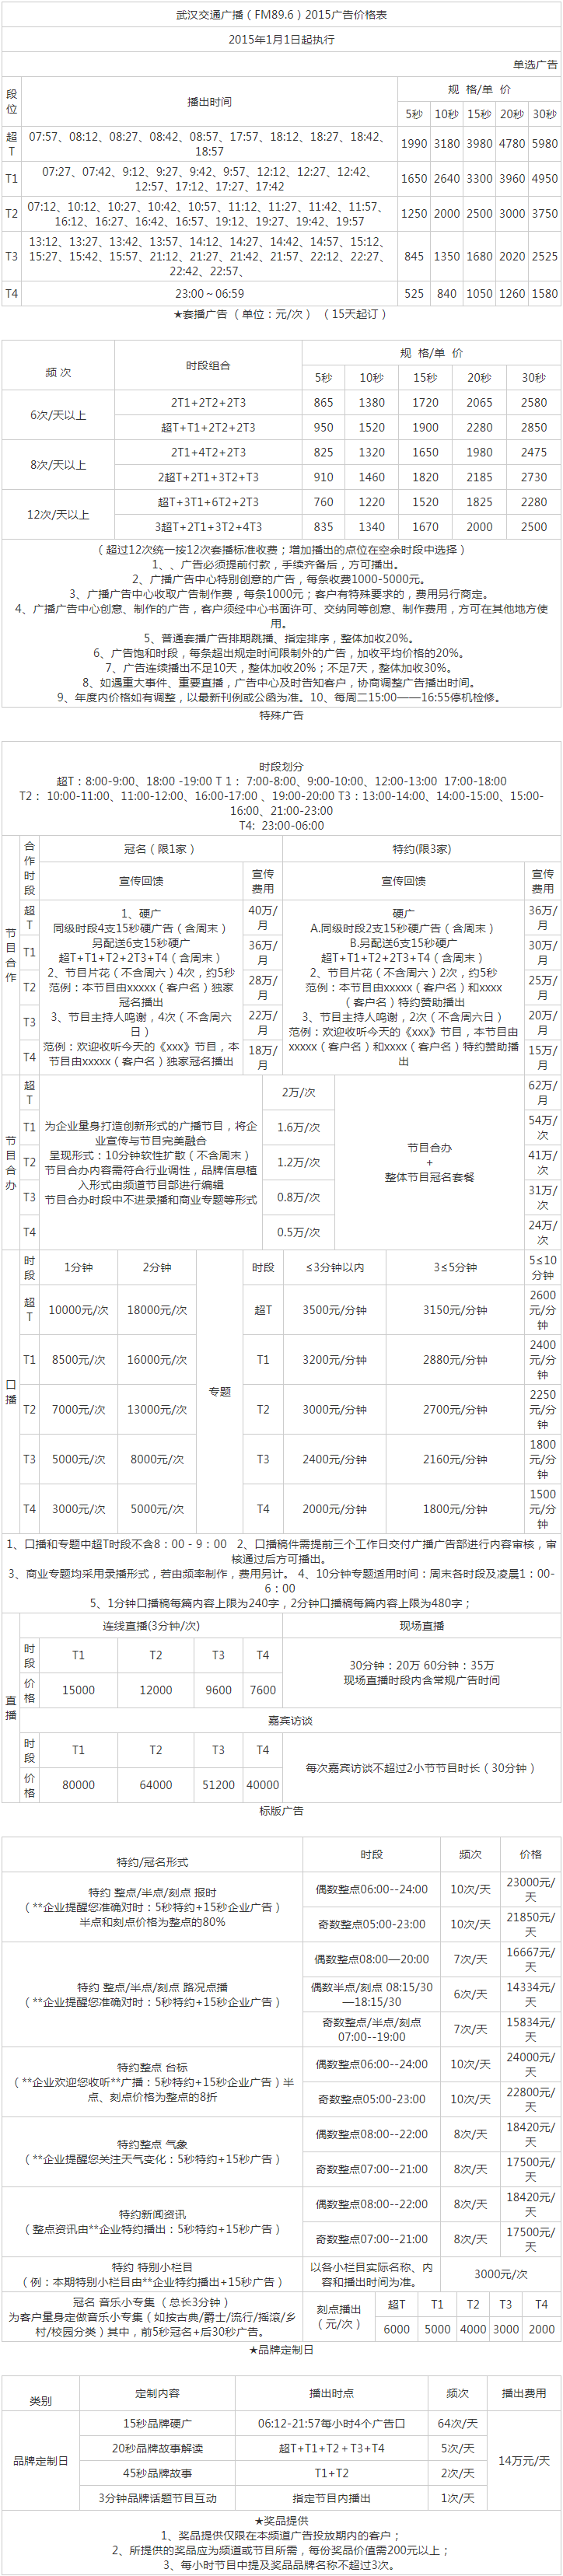 2015武汉人民广播电台交通广播 FM89.6、AM603广告报价表.png